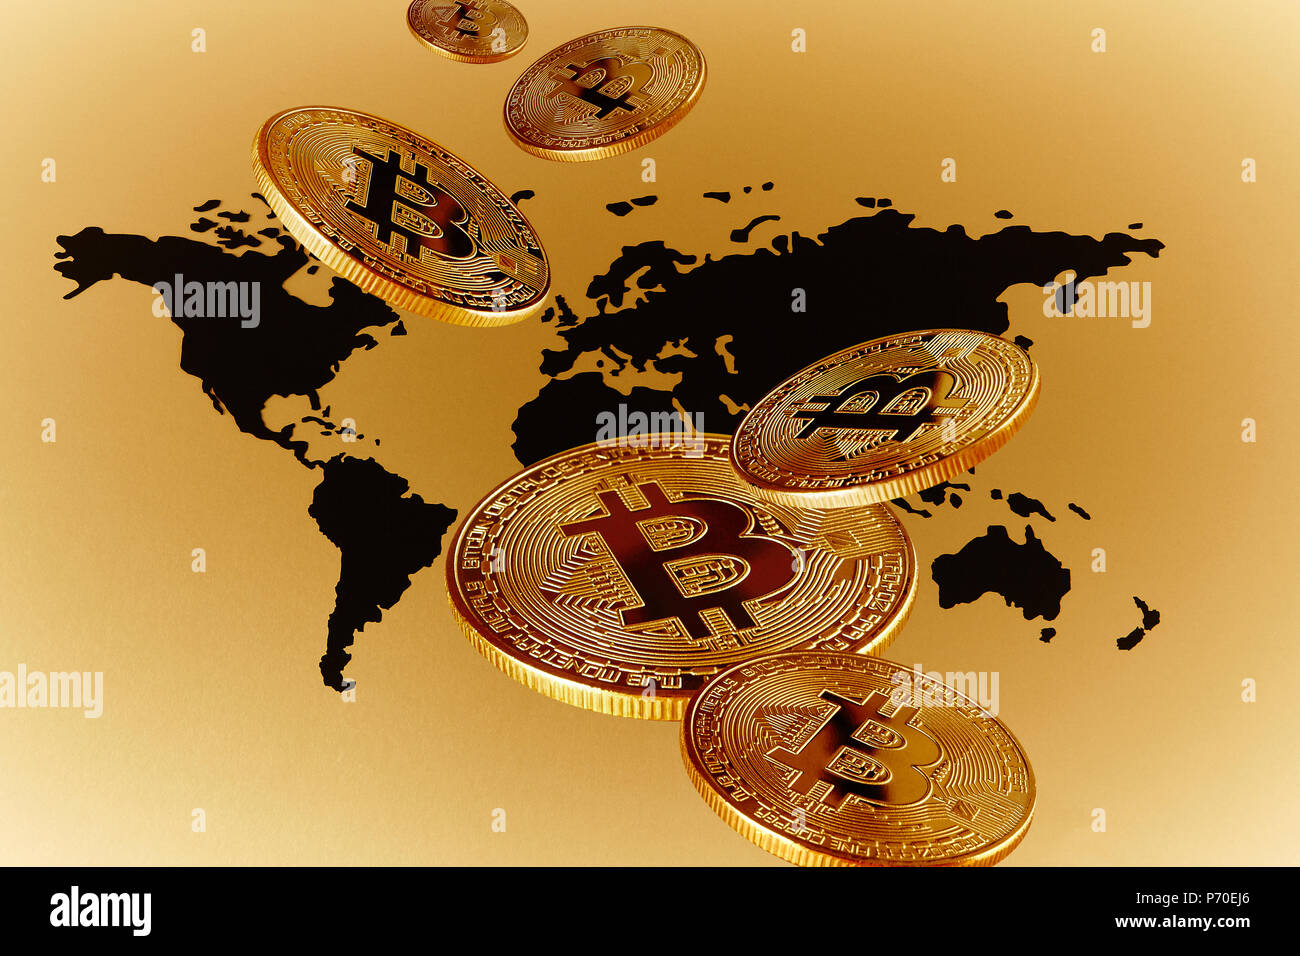 Les Bitcoins sur la carte globale d'or Banque D'Images